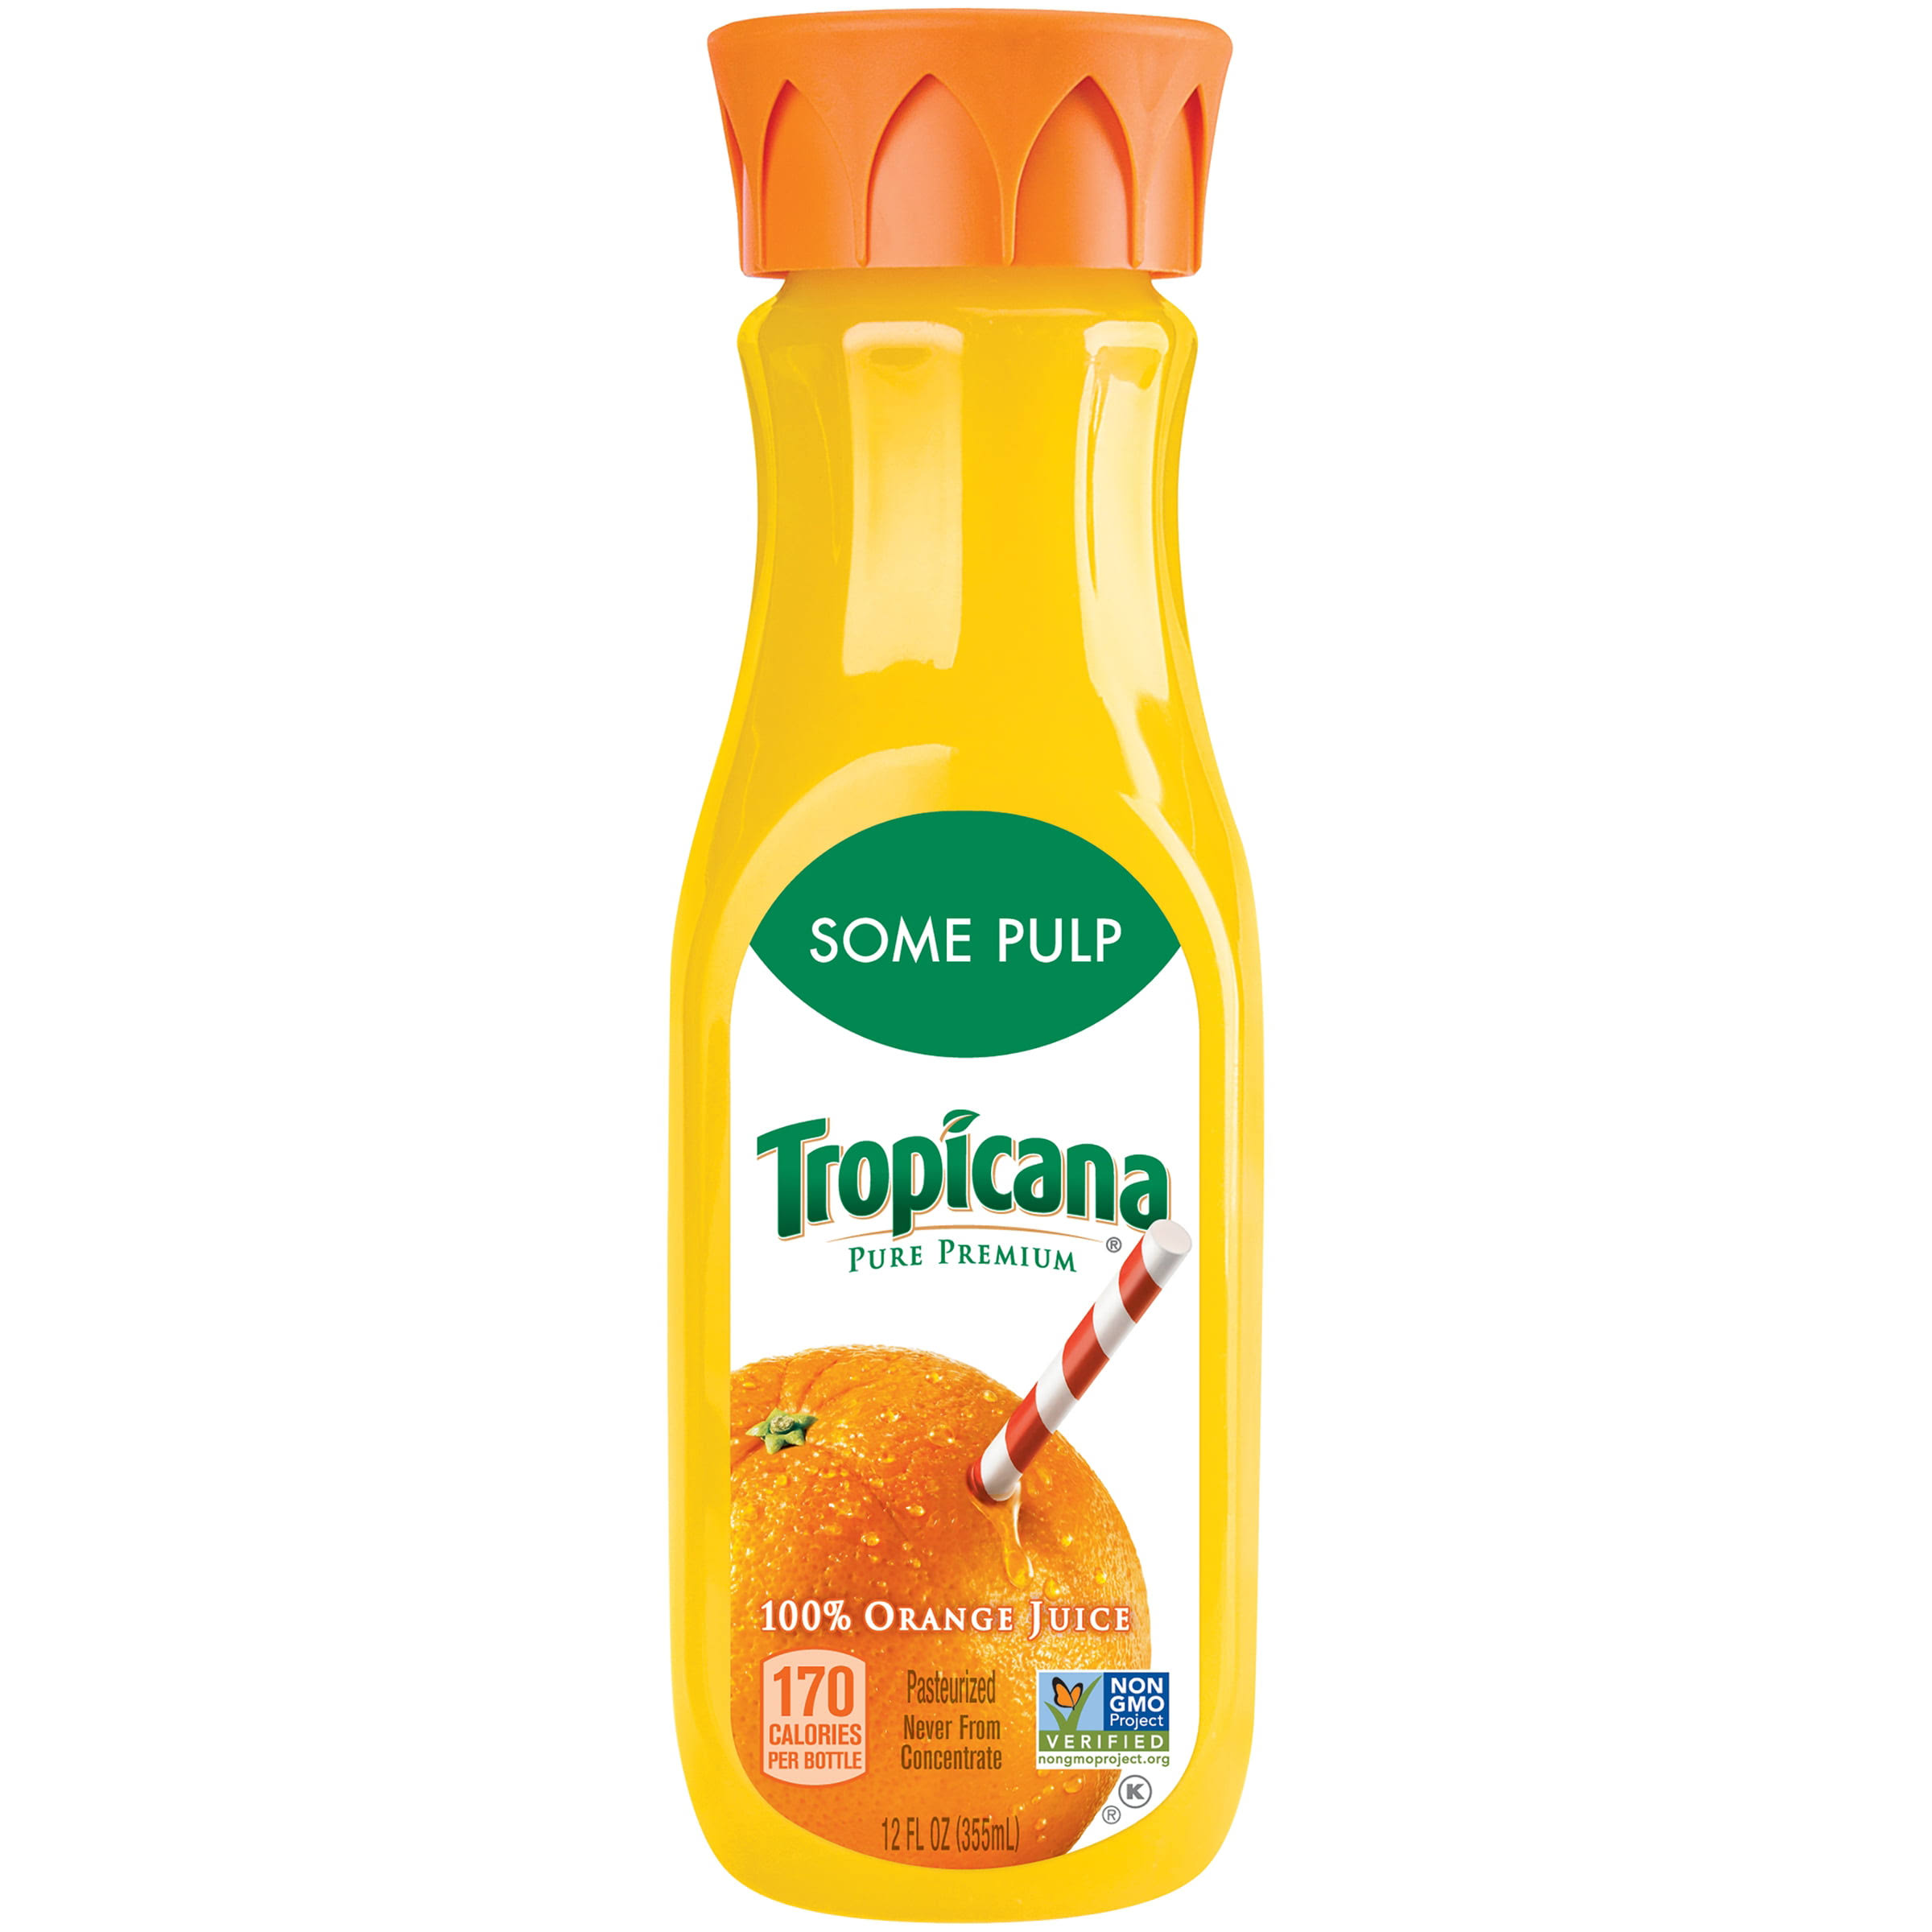 Some Pulp Tropicana Pure Premium Orange Juice - 12oz